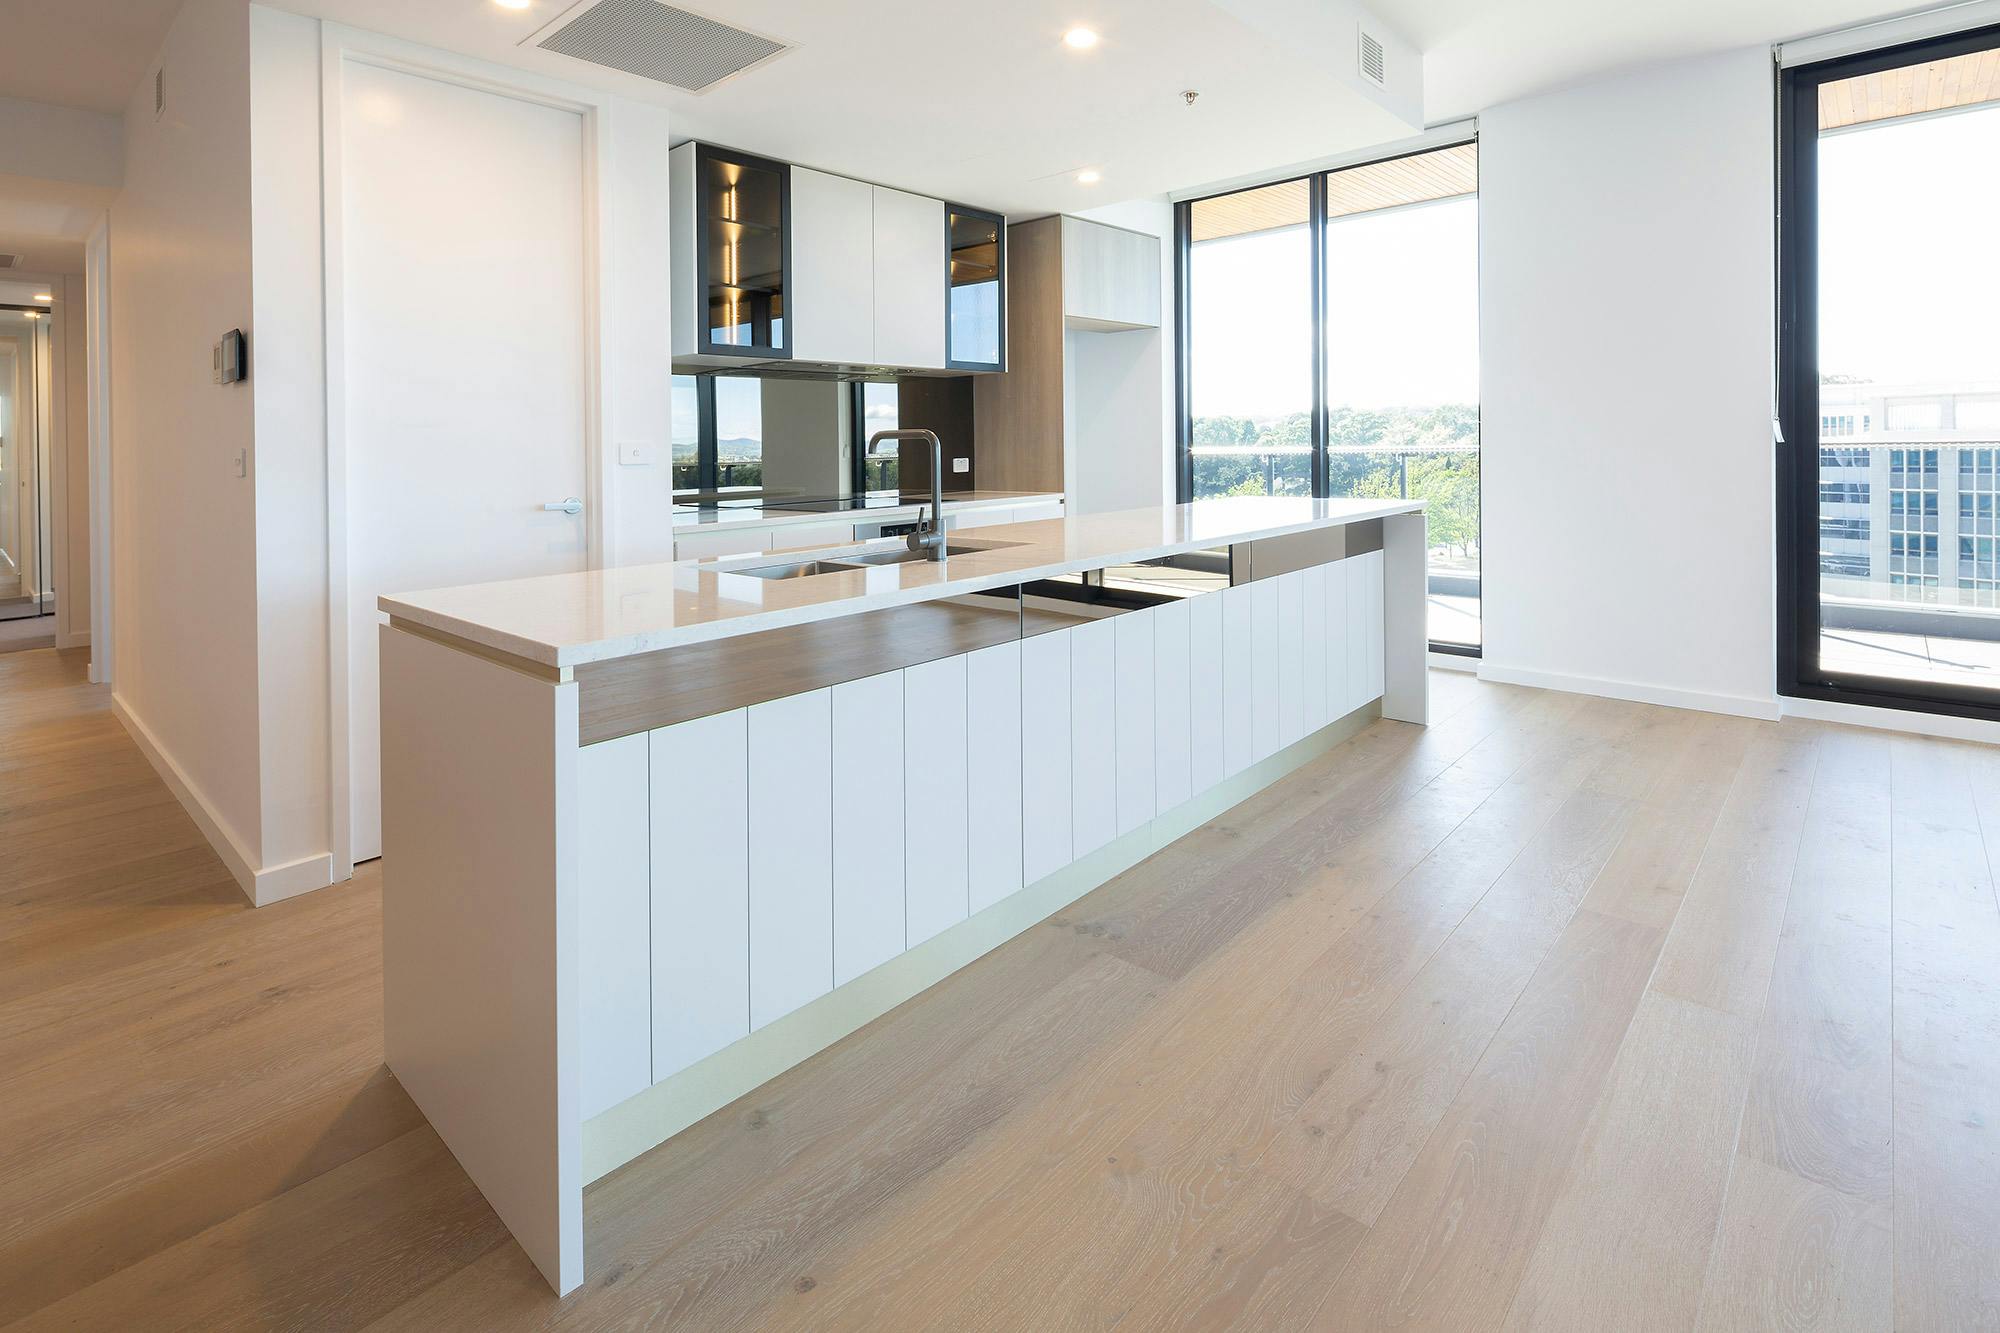 Bildnummer 35 des aktuellen Abschnitts von A luxury flat development in Australia with Sensa, Silestone and DKTN livening up its interior spaces von Cosentino Deutschland